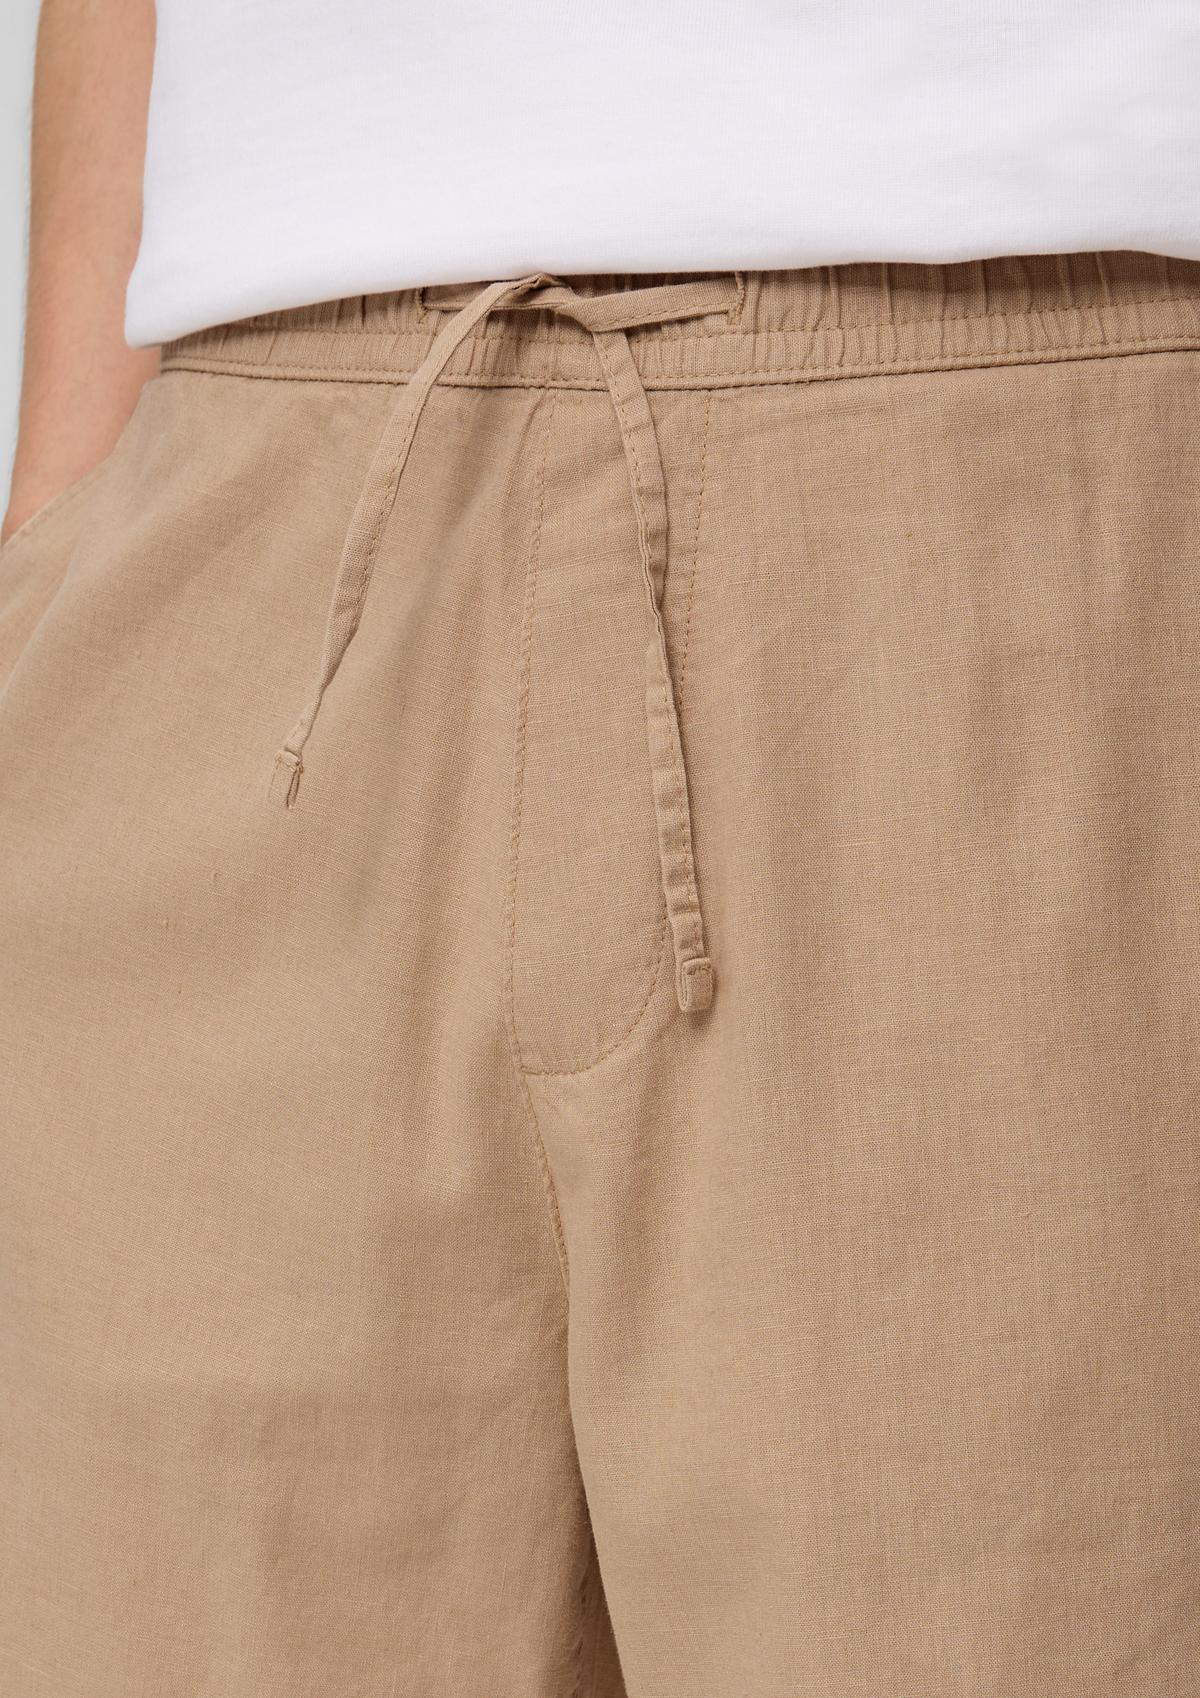 white linen - in shorts Bermuda blended